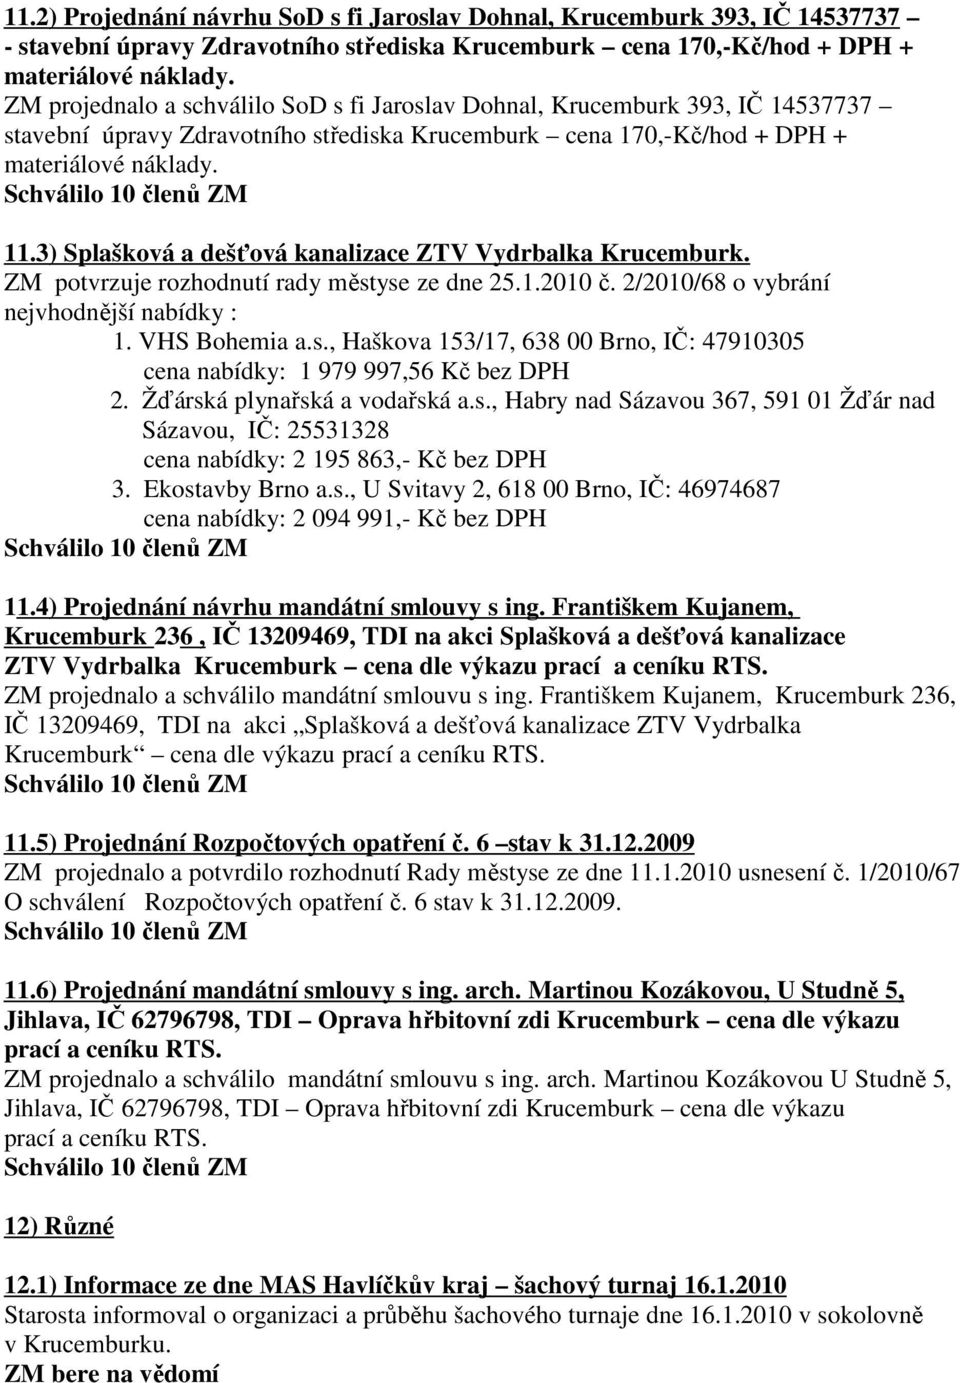 3) Splašková a dešťová kanalizace ZTV Vydrbalka Krucemburk. ZM potvrzuje rozhodnutí rady městyse ze dne 25.1.2010 č. 2/2010/68 o vybrání nejvhodnější nabídky : 1. VHS Bohemia a.s., Haškova 153/17, 638 00 Brno, IČ: 47910305 cena nabídky: 1 979 997,56 Kč bez DPH 2.